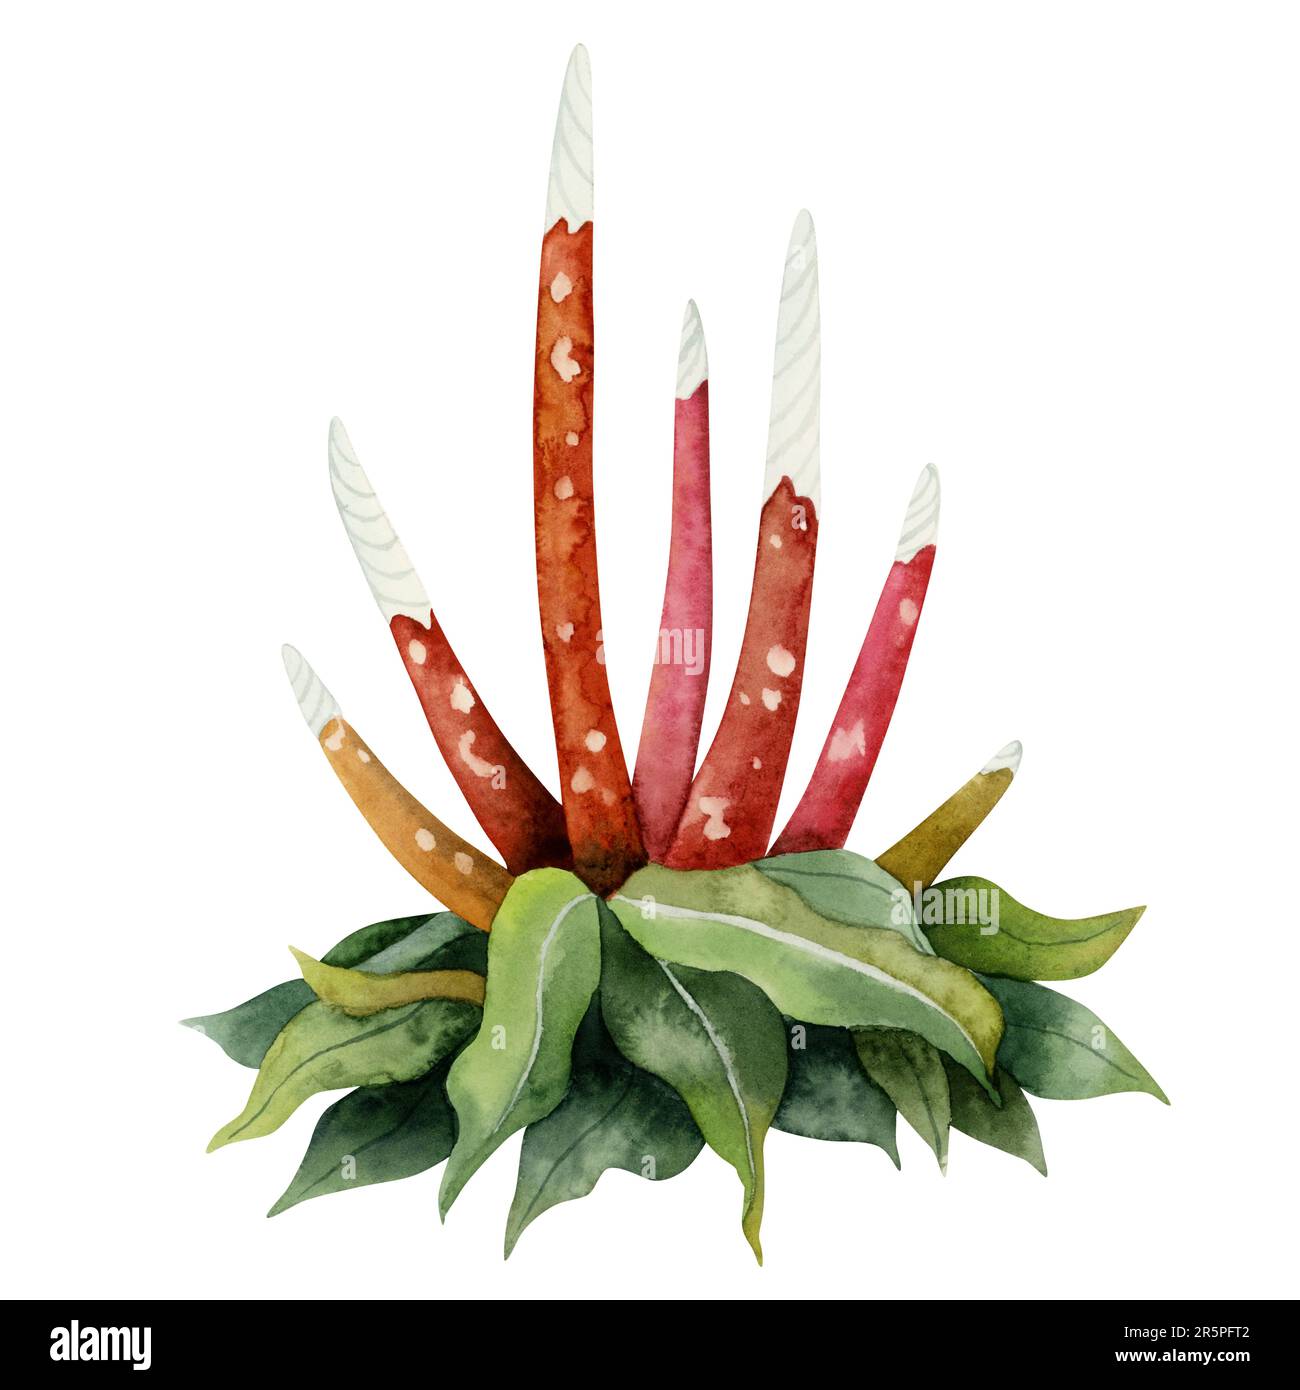 Aquarelle fantaisie Bush avec de longues tiges à pois rouges ou illustration de fleurs. Flore fictive colorée, plante inexistante Banque D'Images